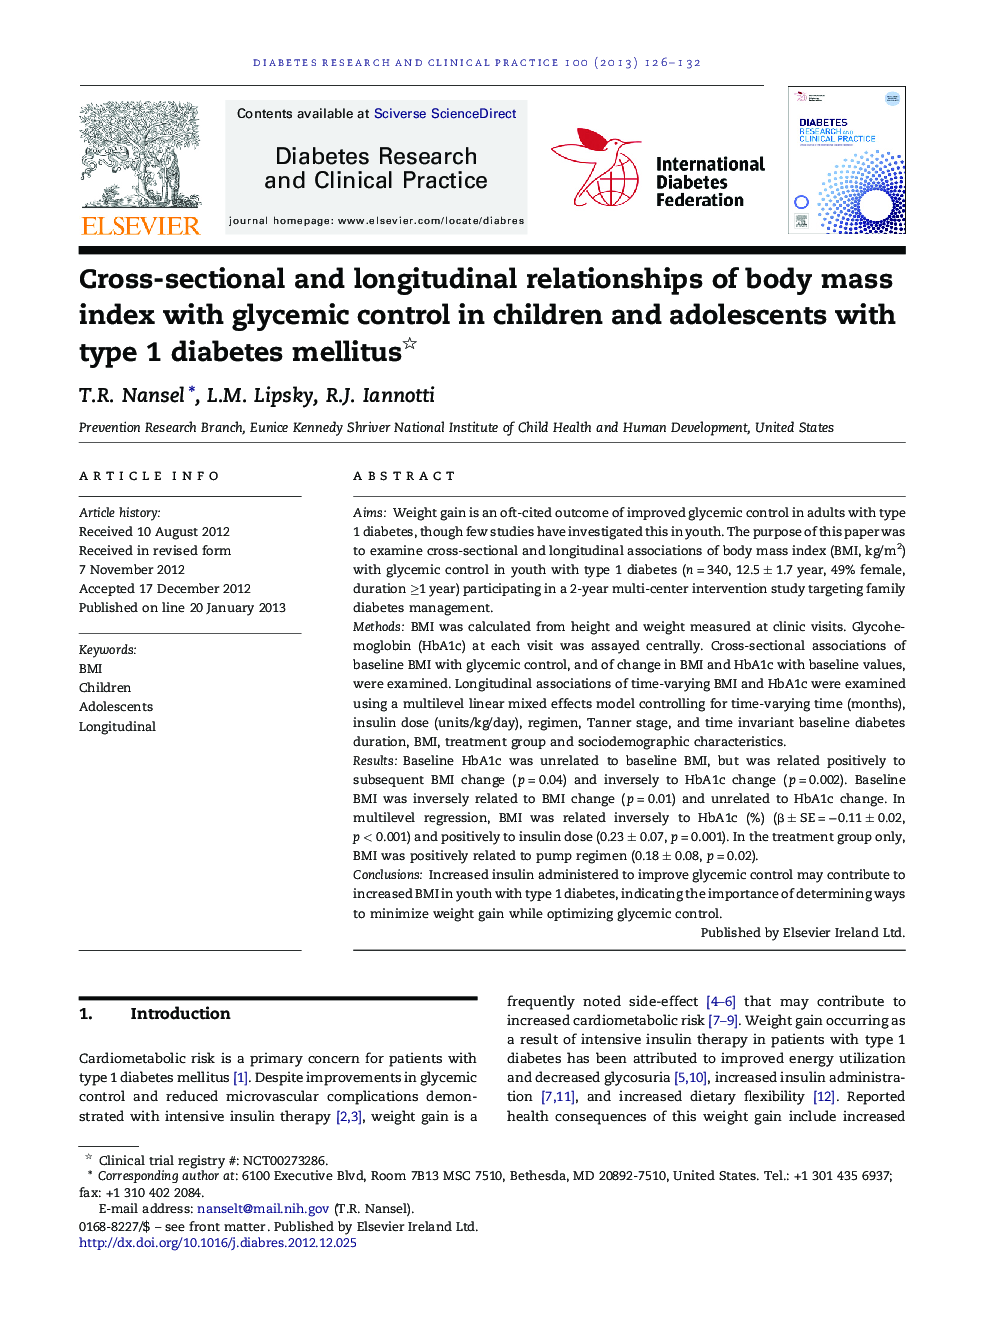 روابط مقطعی و طولی شاخص توده بدنی با کنترل گلیسمی در کودکان و نوجوانان مبتلا به دیابت نوع 1 